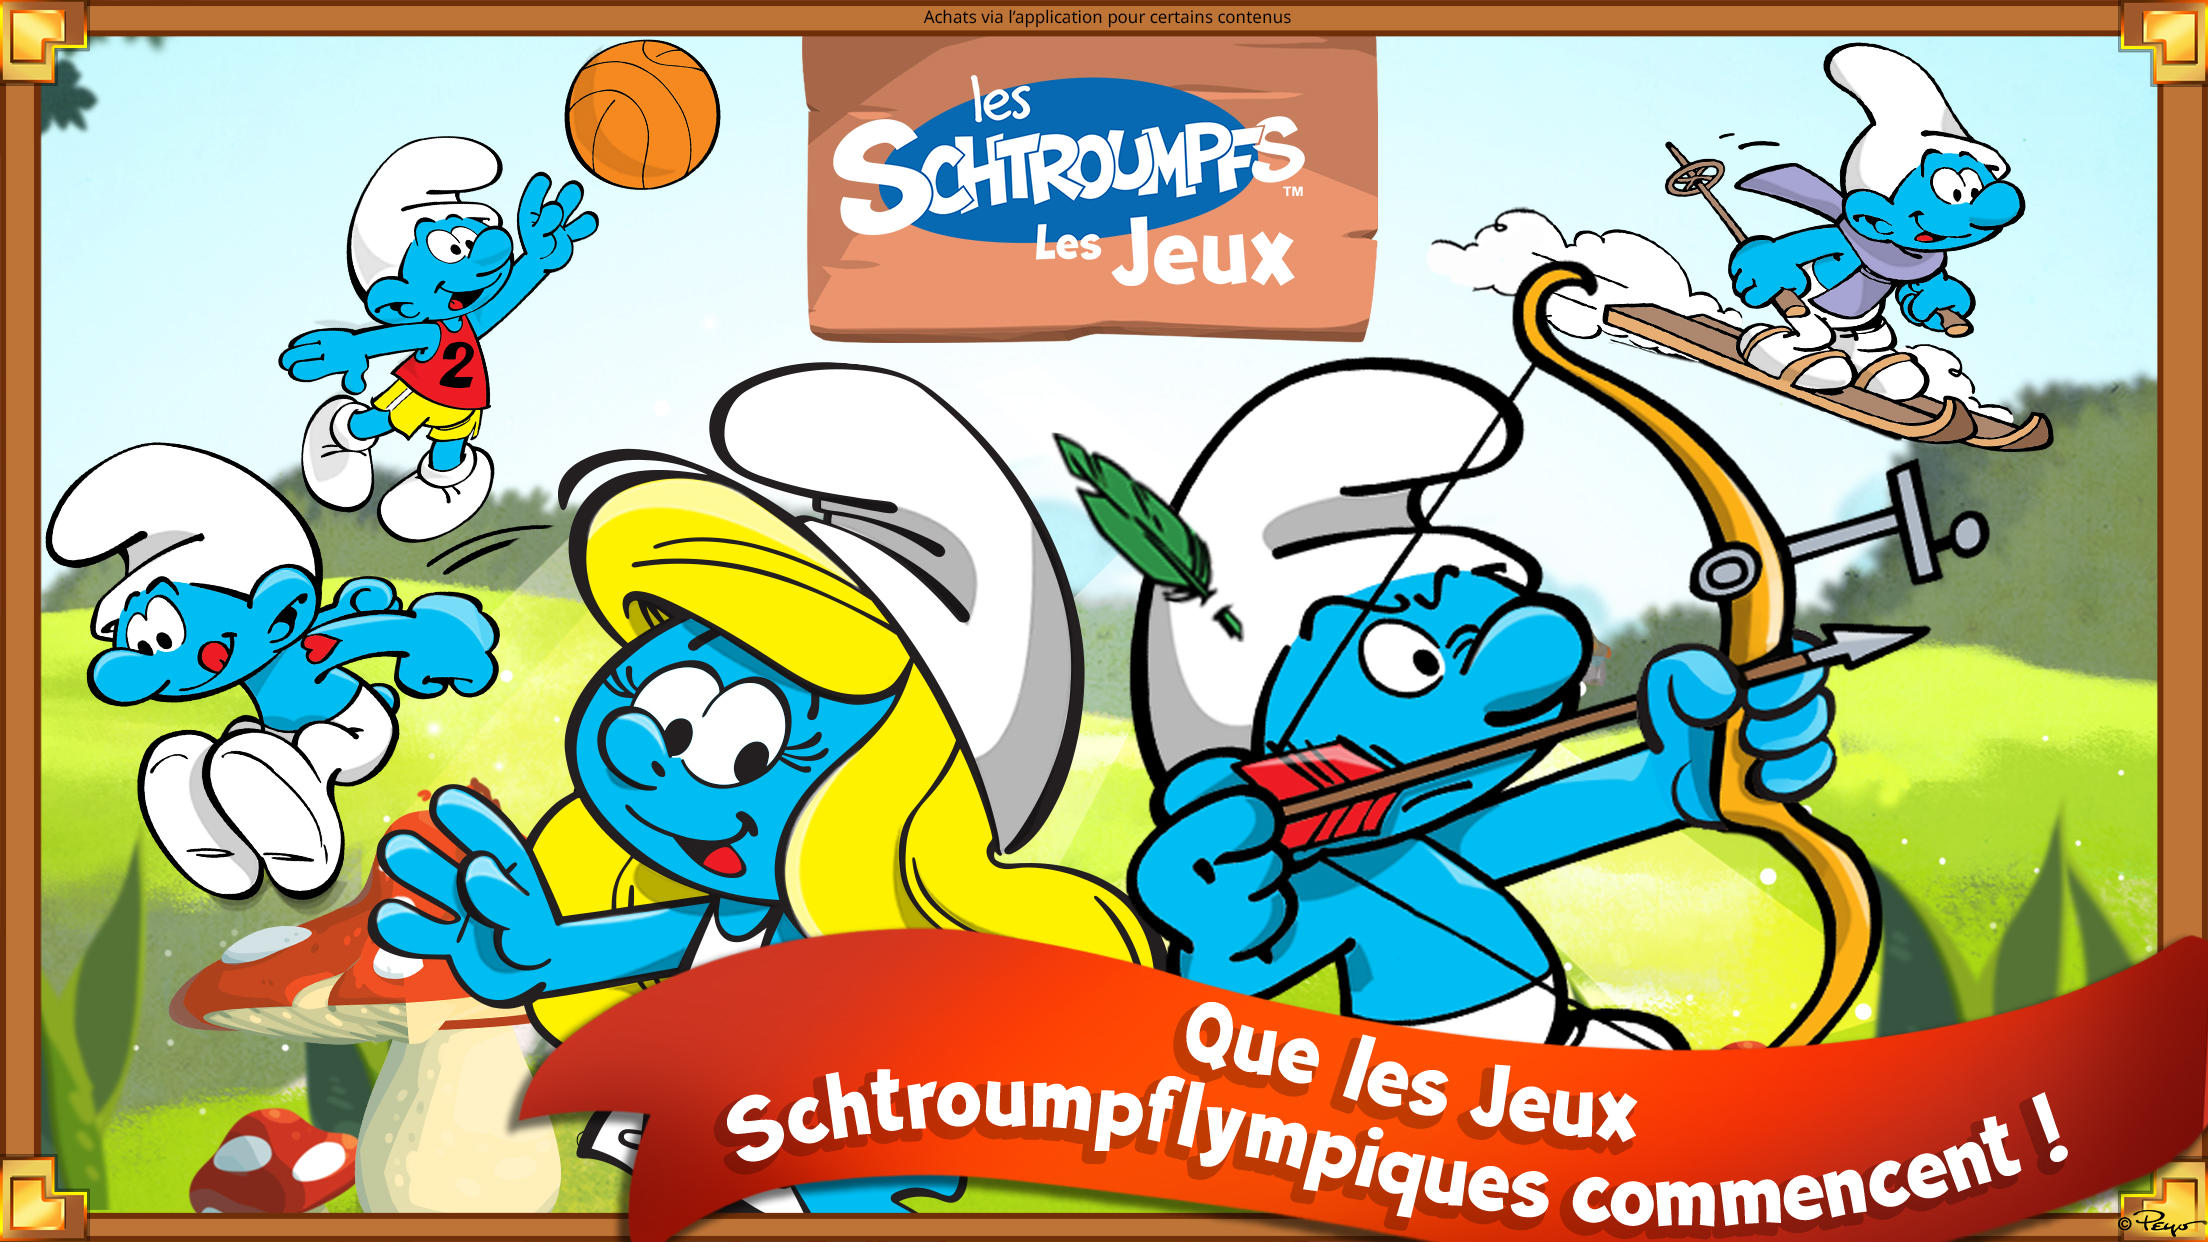 Screenshot 1 of Les Schtroumpfs: Les Jeux 2023.1.0